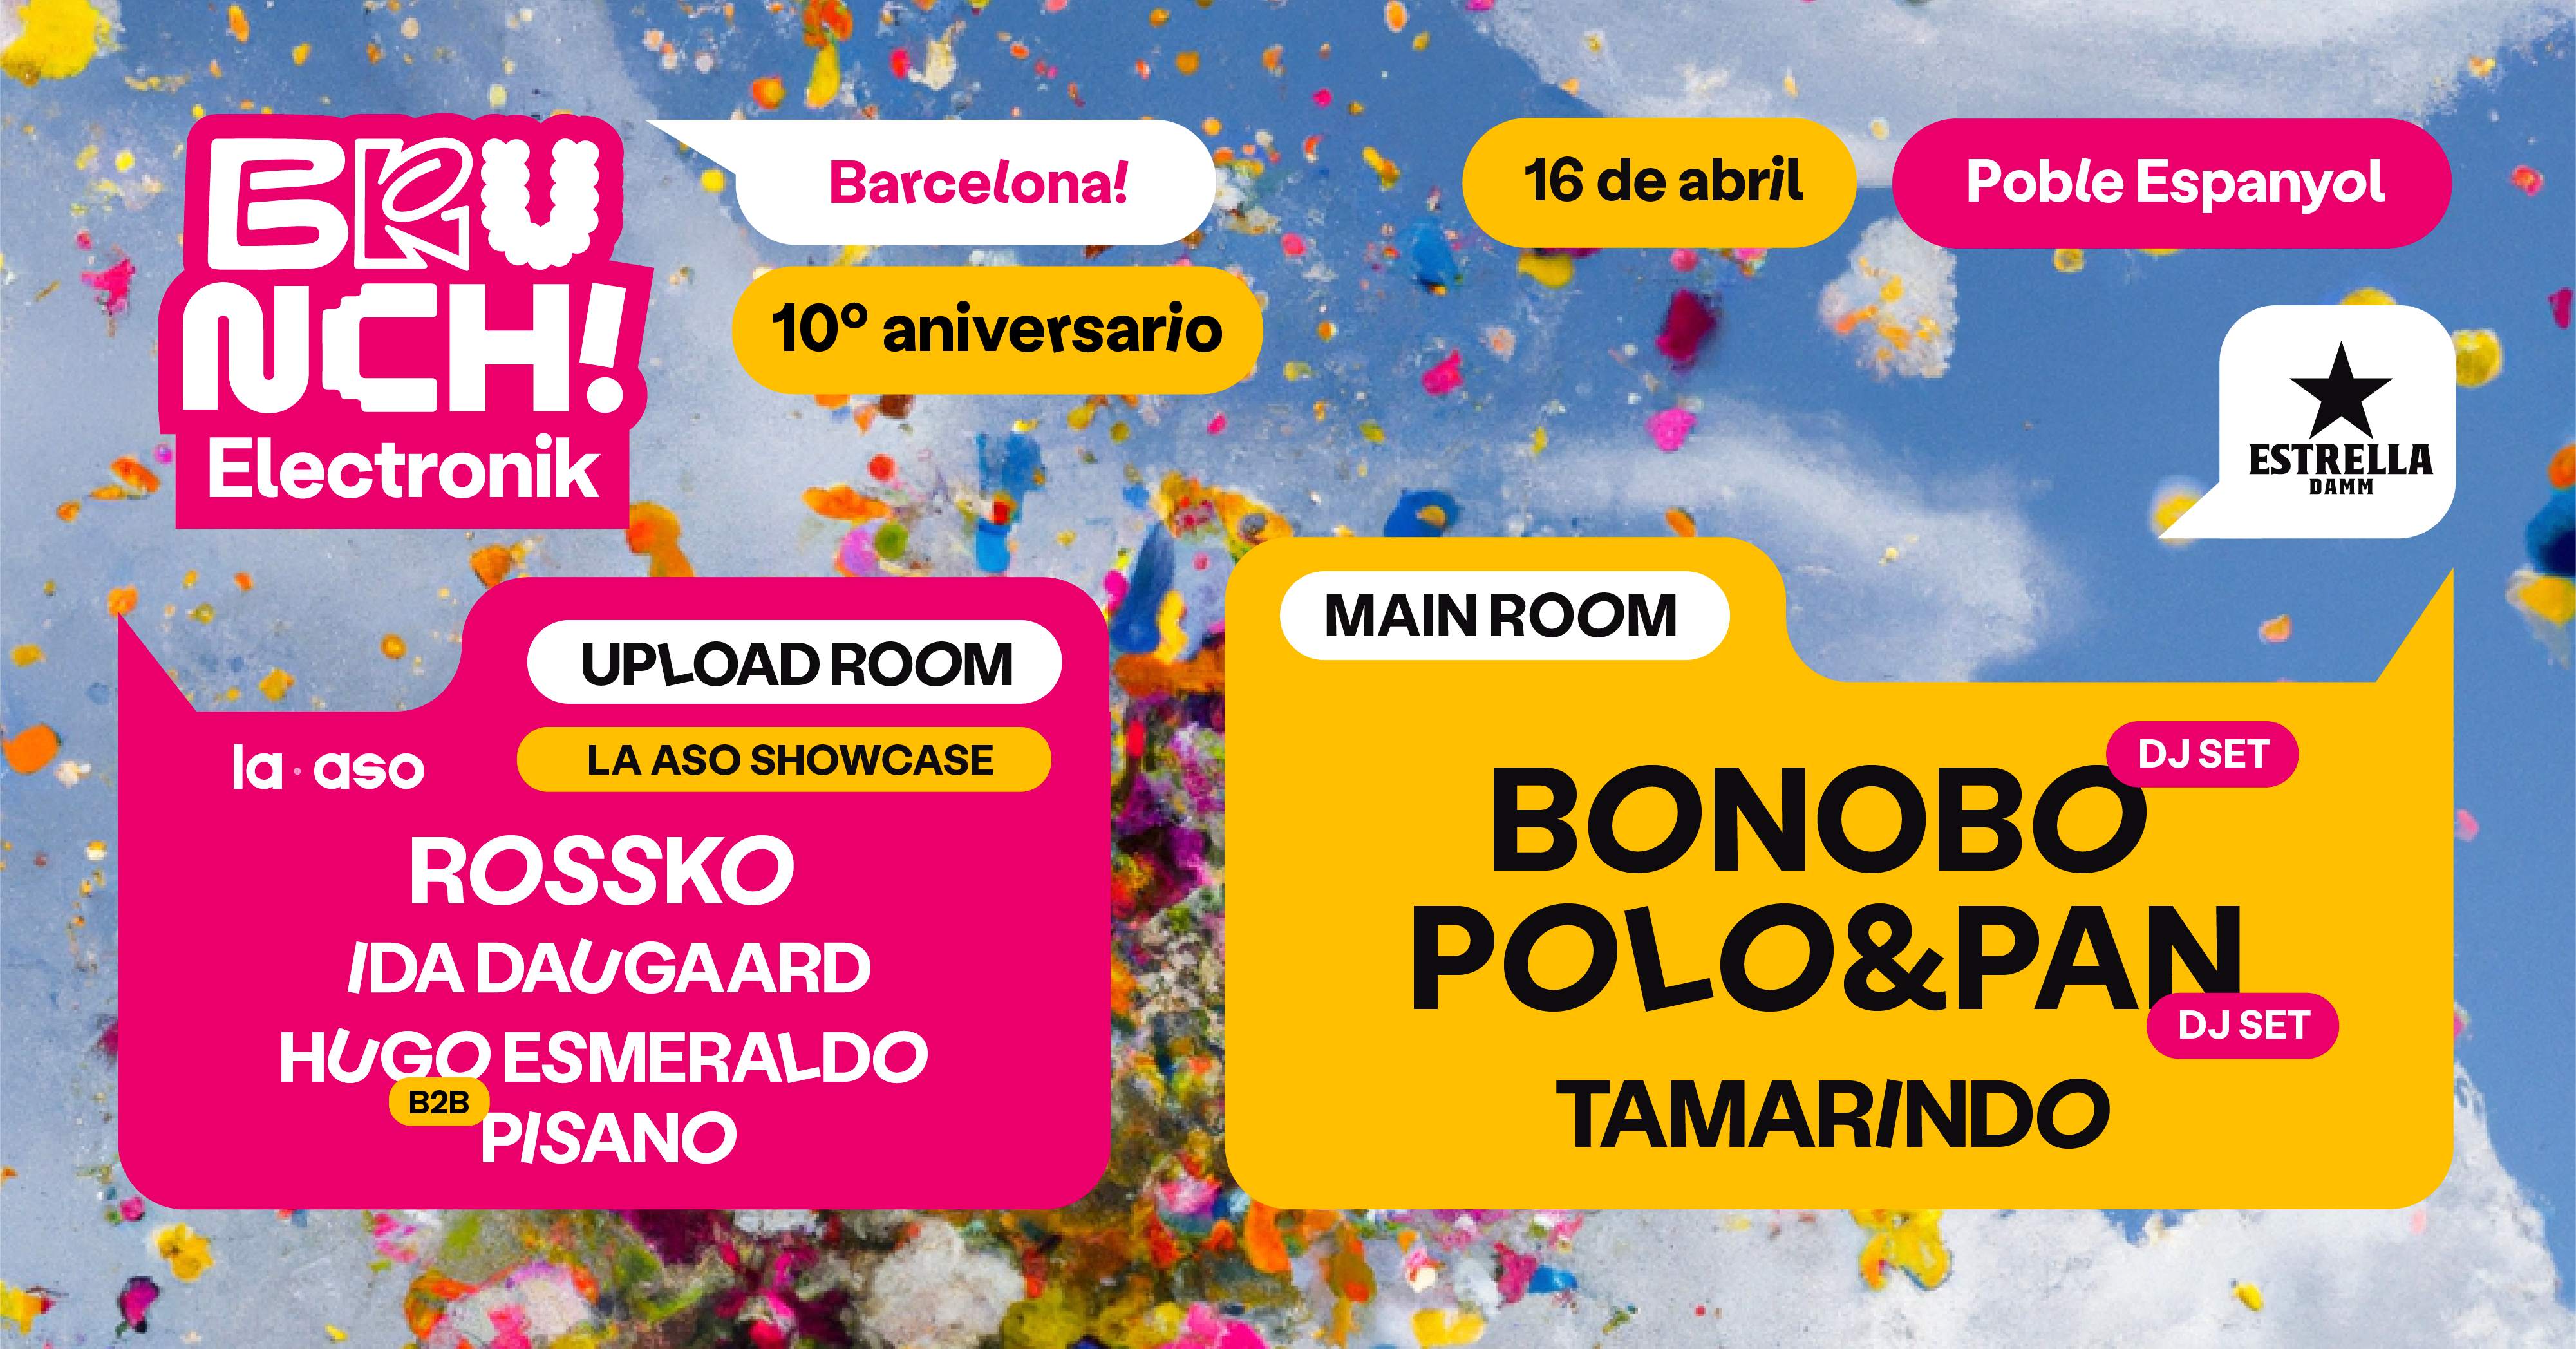 *SOLD OUT* BRUNCH ELECTRONIK #3: Bonobo (DJ set), Polo & Pan (DJ set) y más artistas - Página trasera